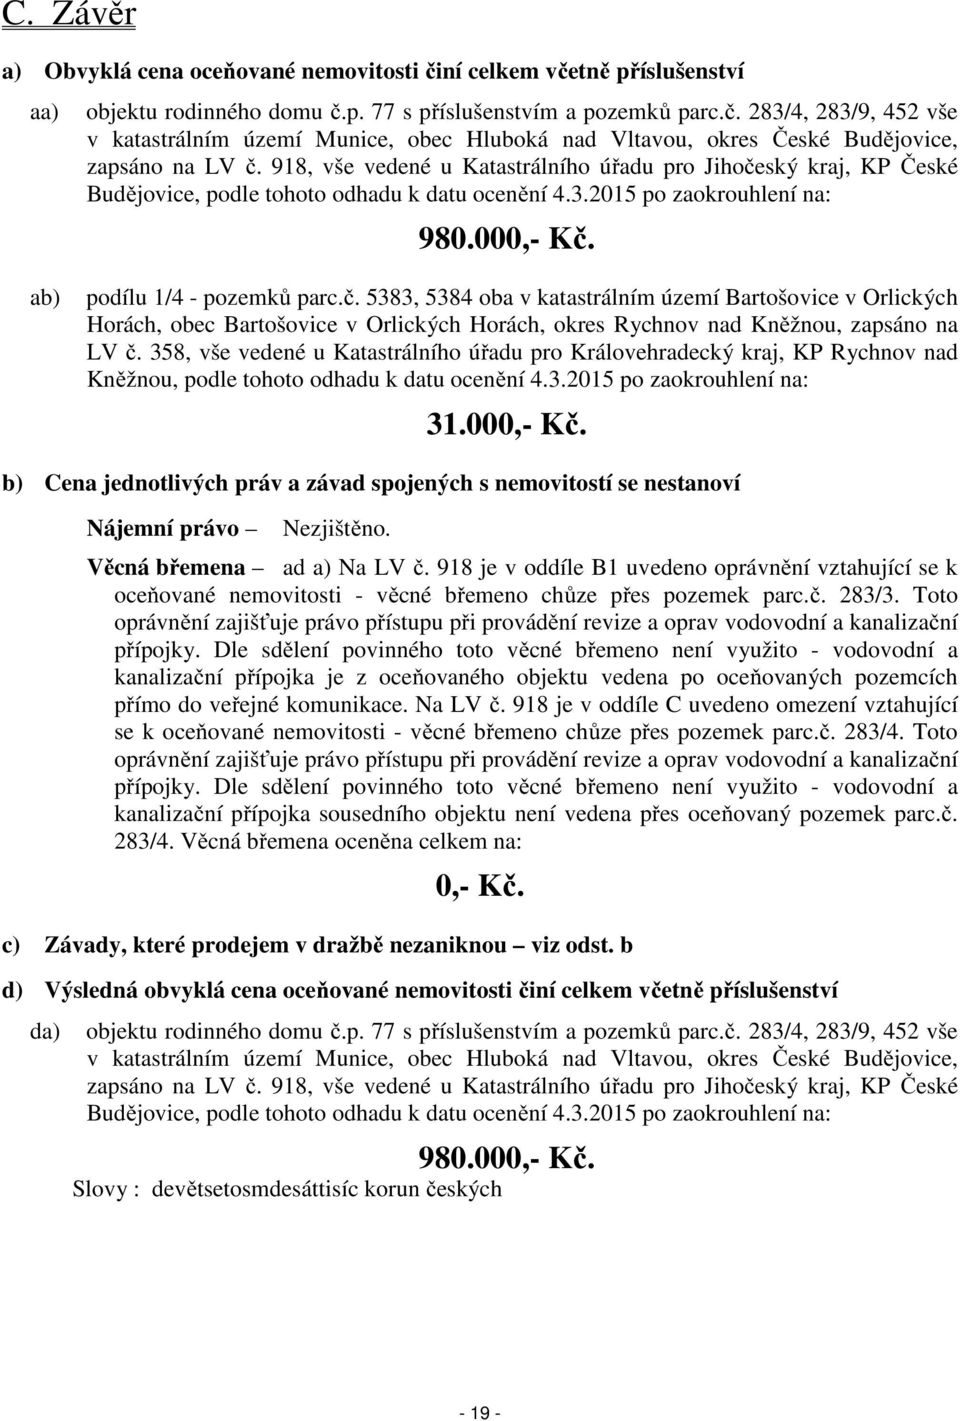 358, vše vedené u Katastrálního úřadu pro Královehradecký kraj, KP Rychnov nad Kněžnou, podle tohoto odhadu k datu ocenění 4.3.2015 po zaokrouhlení na: 31.000,- Kč.